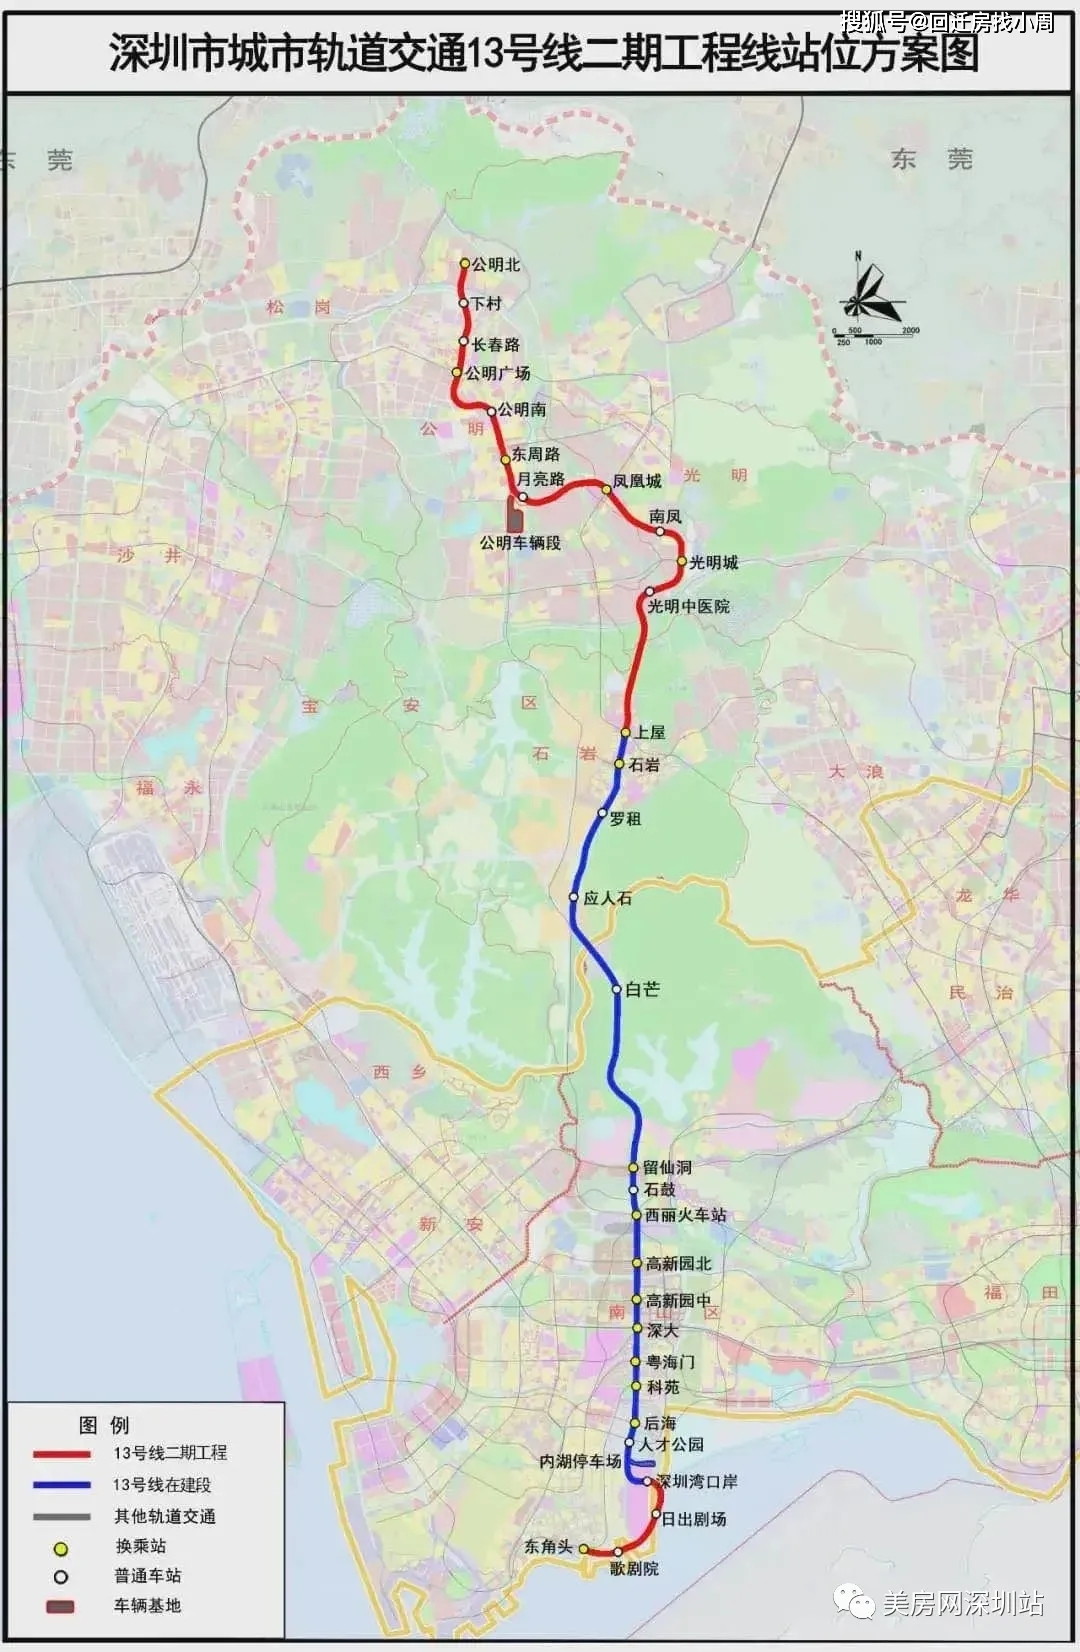 建议收藏深圳地铁线路图最详细133号线附高铁与城际线路图